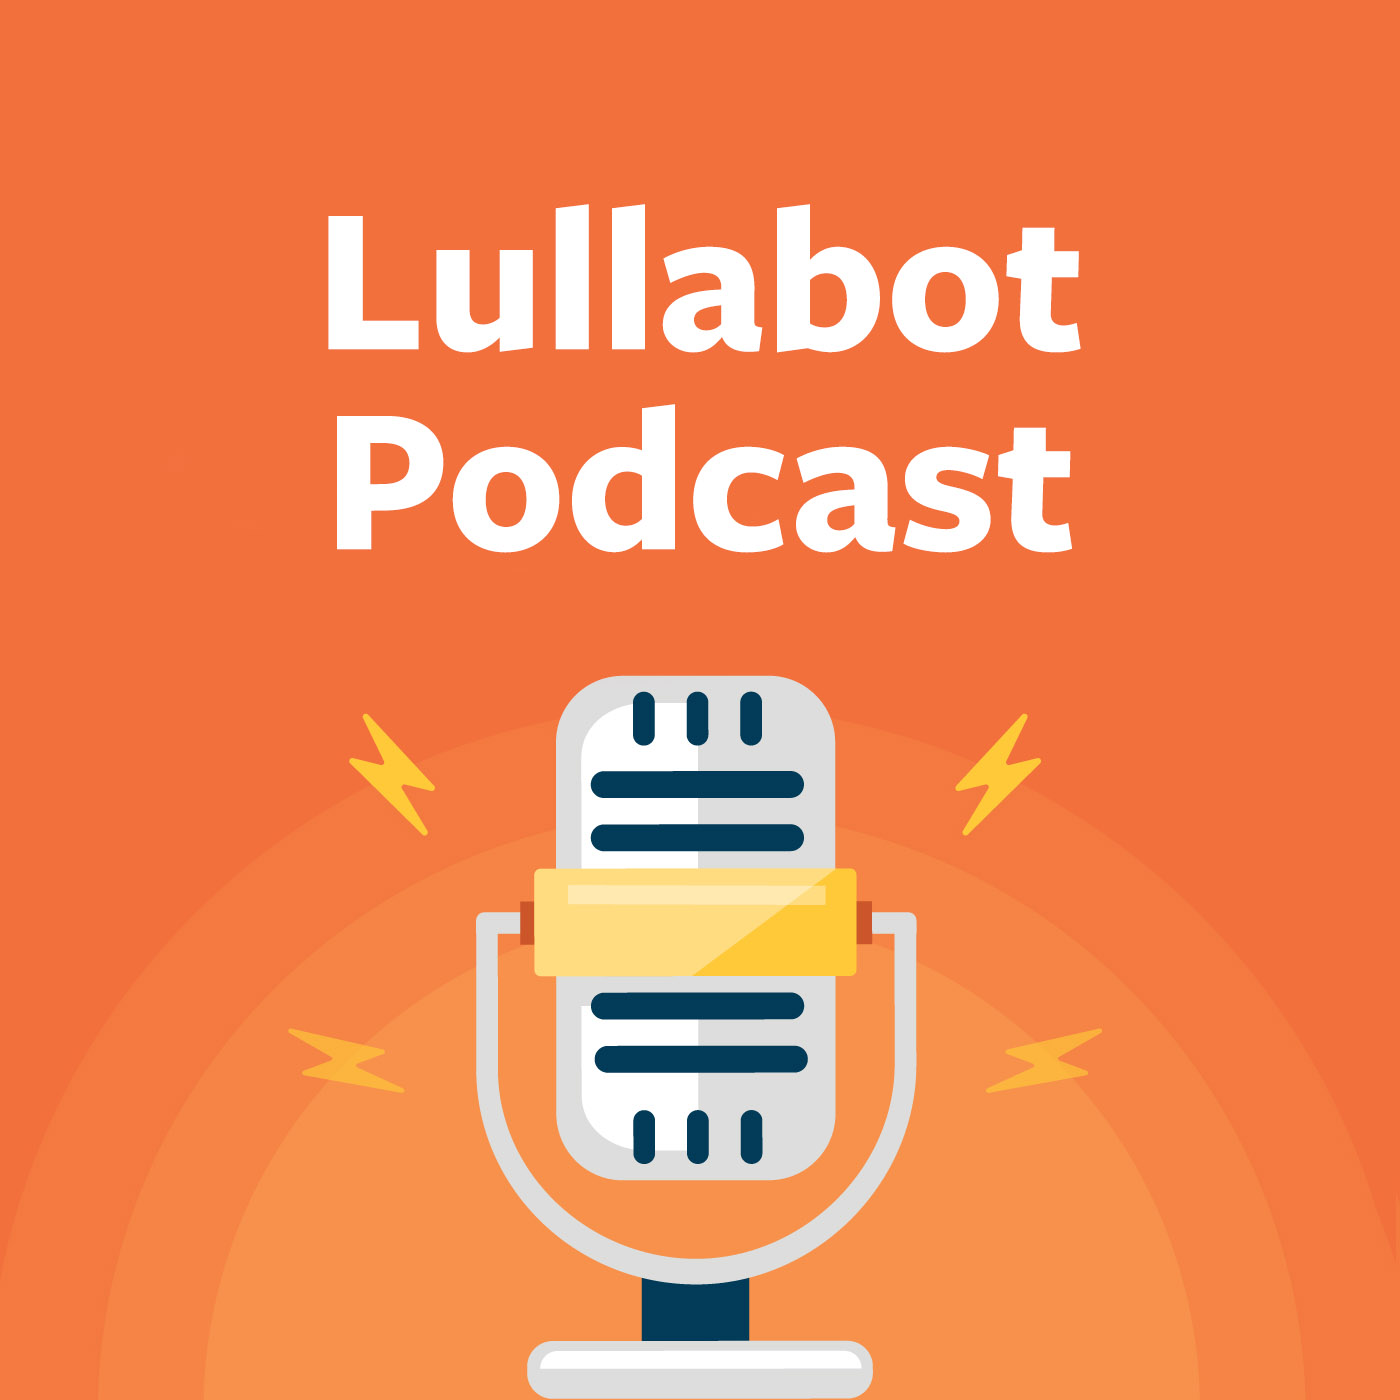 Lullabot Podcast